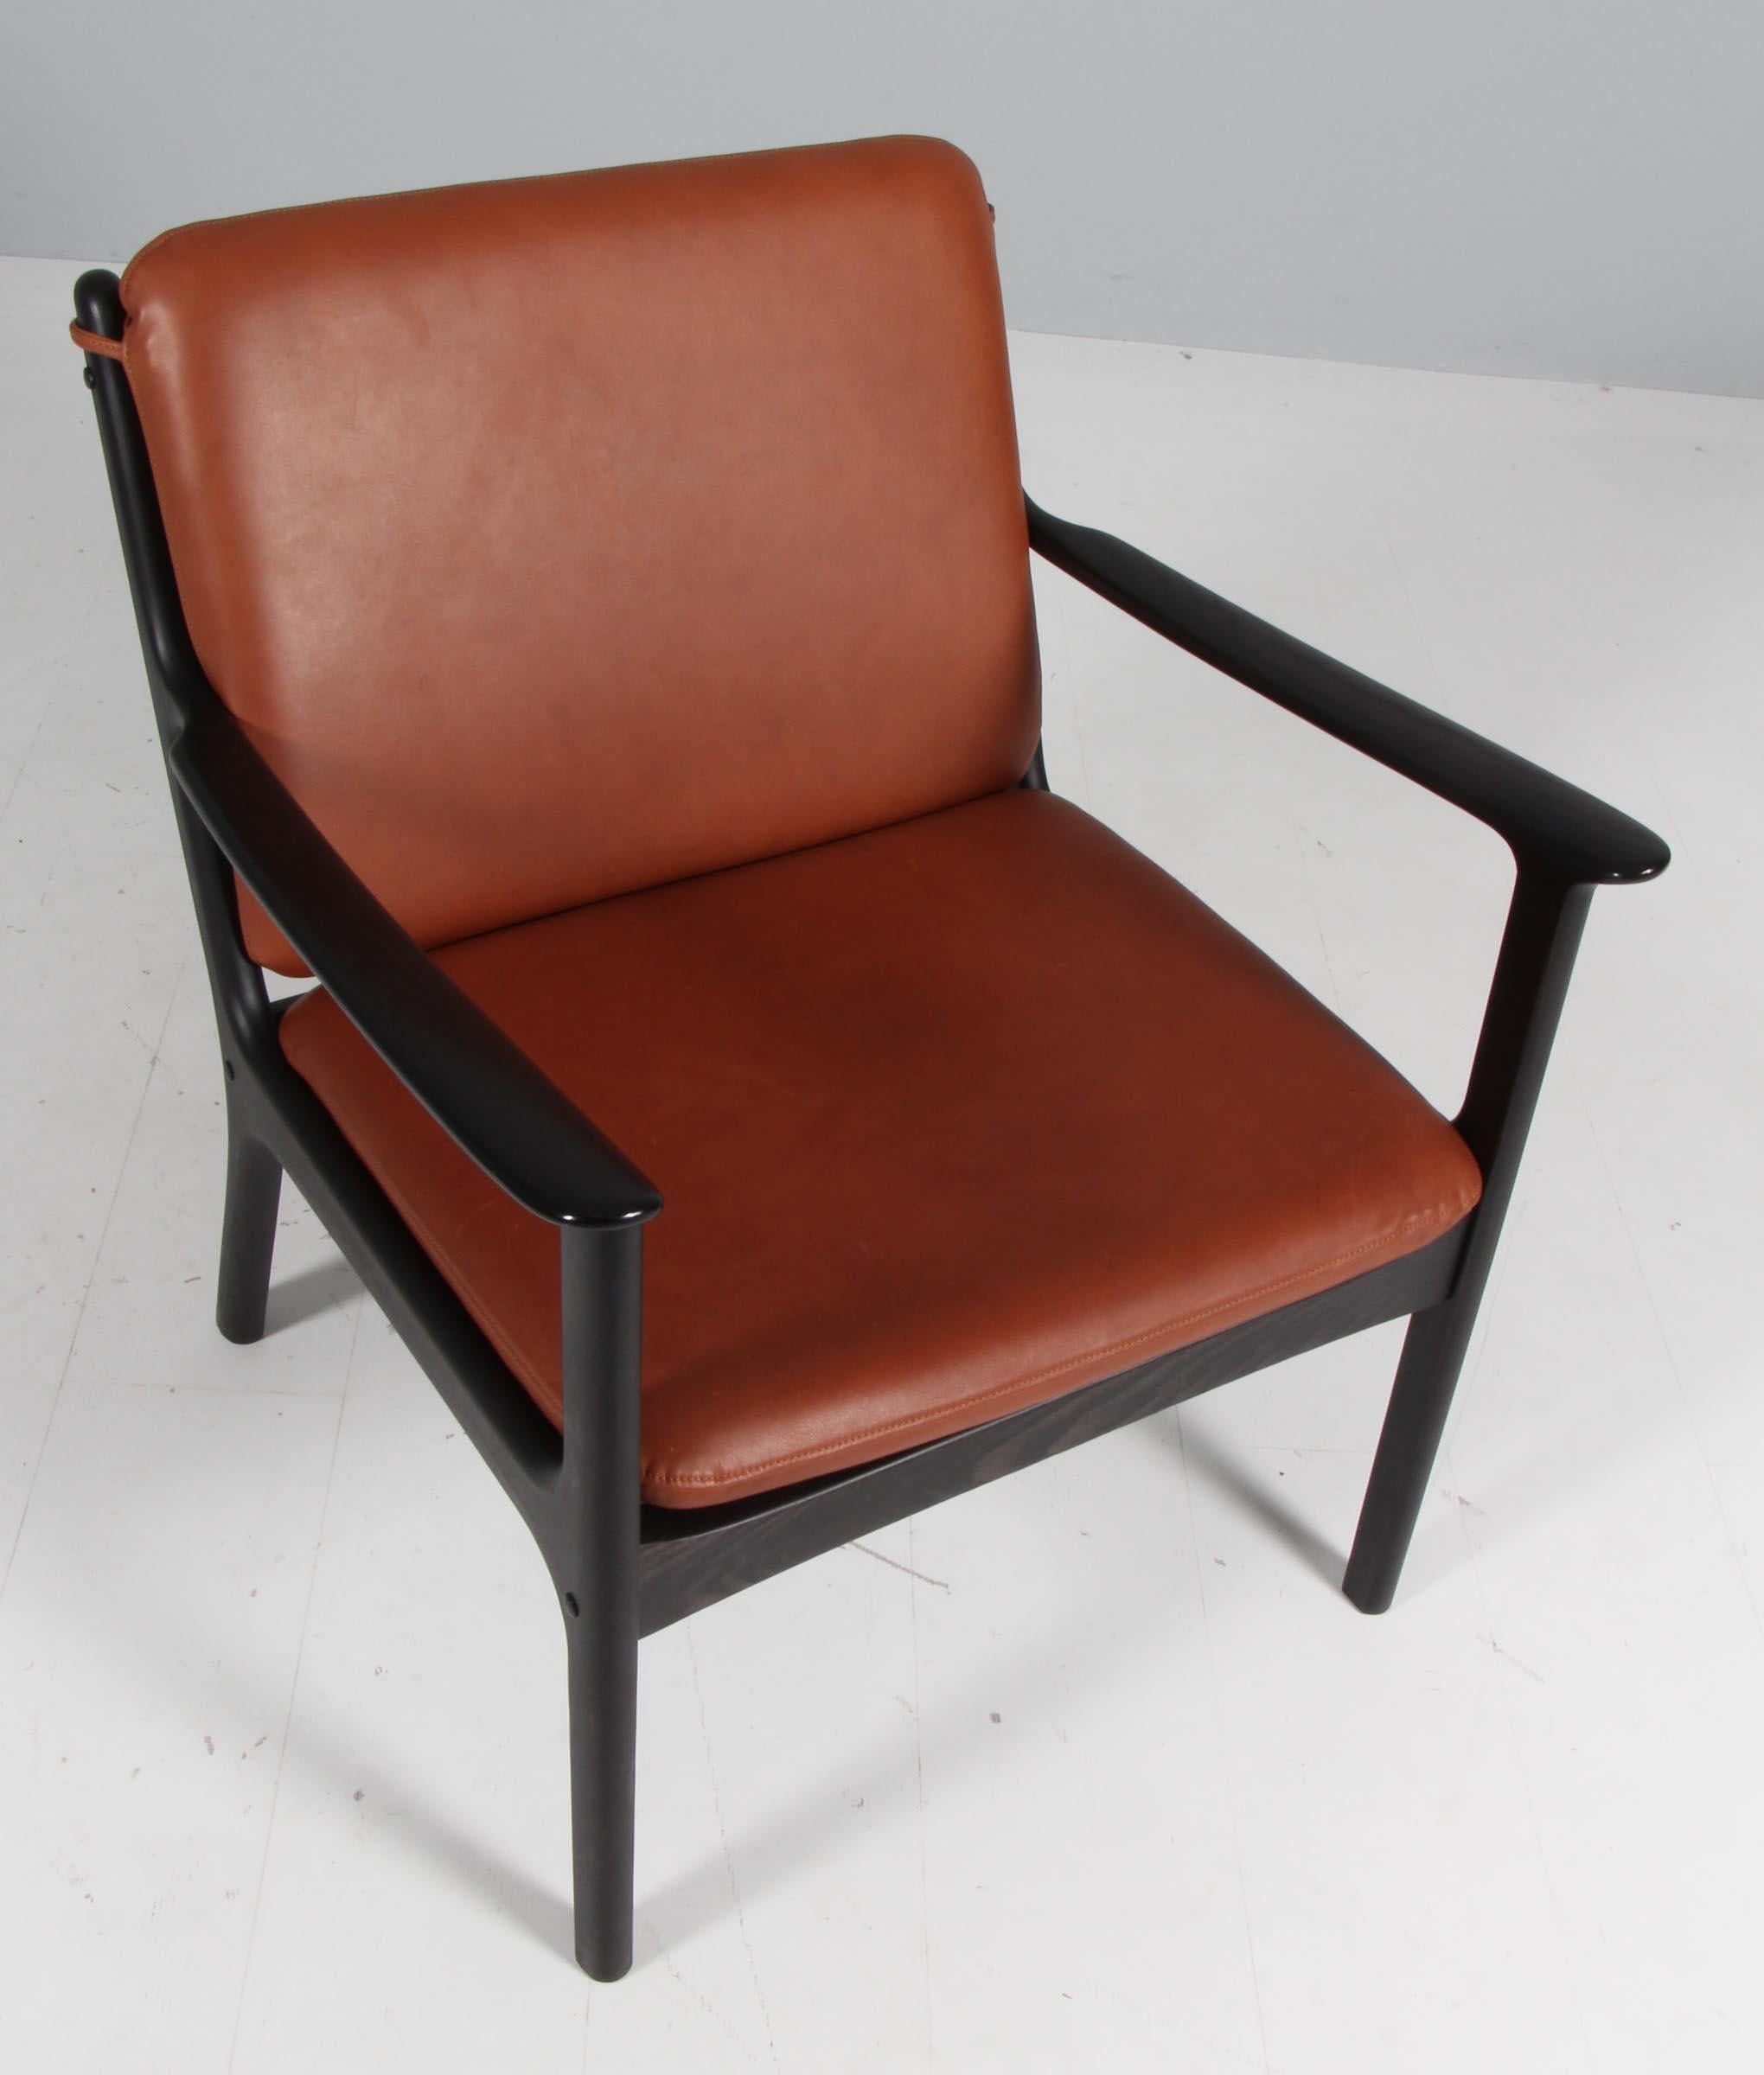 Chaise de salon Ole Wanscher neuve, recouverte de cuir aniline couleur brandy. 

Fabriqué en frêne massif teinté.

Modèle PJ 112, fabriqué par Poul Jeppesen.

 